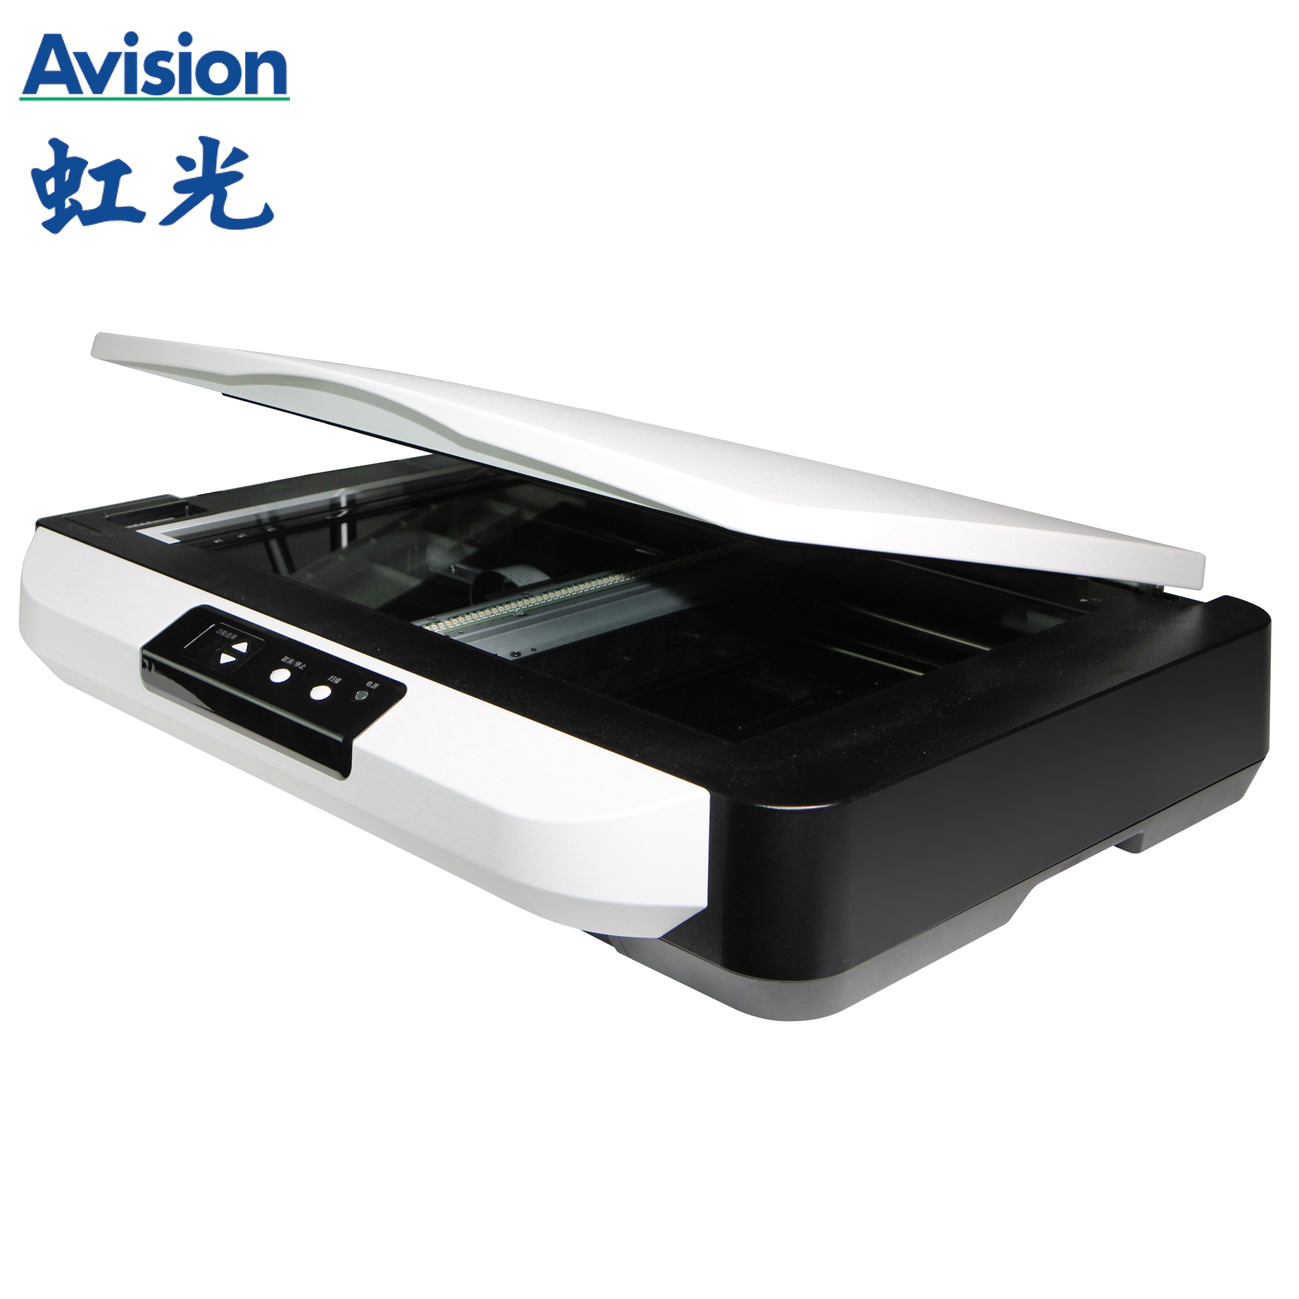 虹光/Avision AT264+ 扫描仪